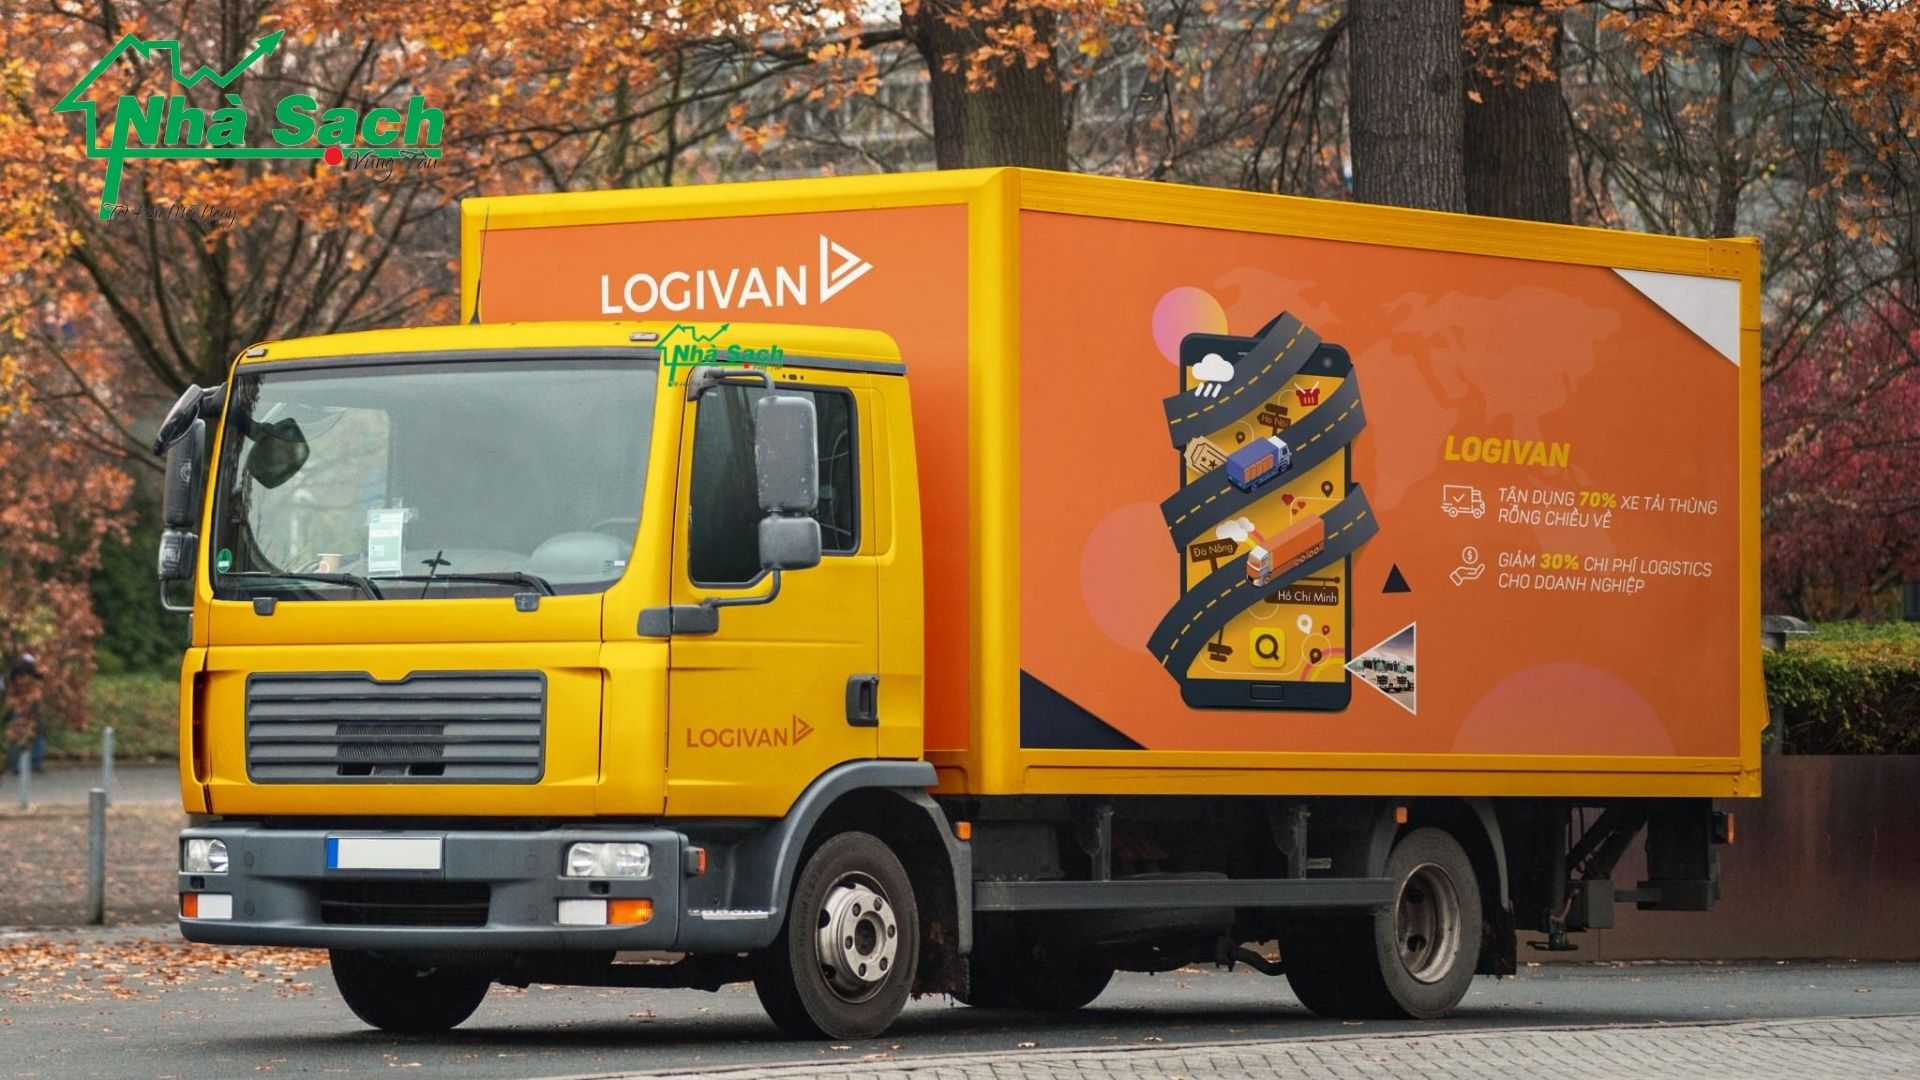 Logivan - ứng dụng hoàn toàn miễn phí, giúp kết nối chủ hàng với mạng lưới đối tác vận tải trên toàn quốc và ngược lại.